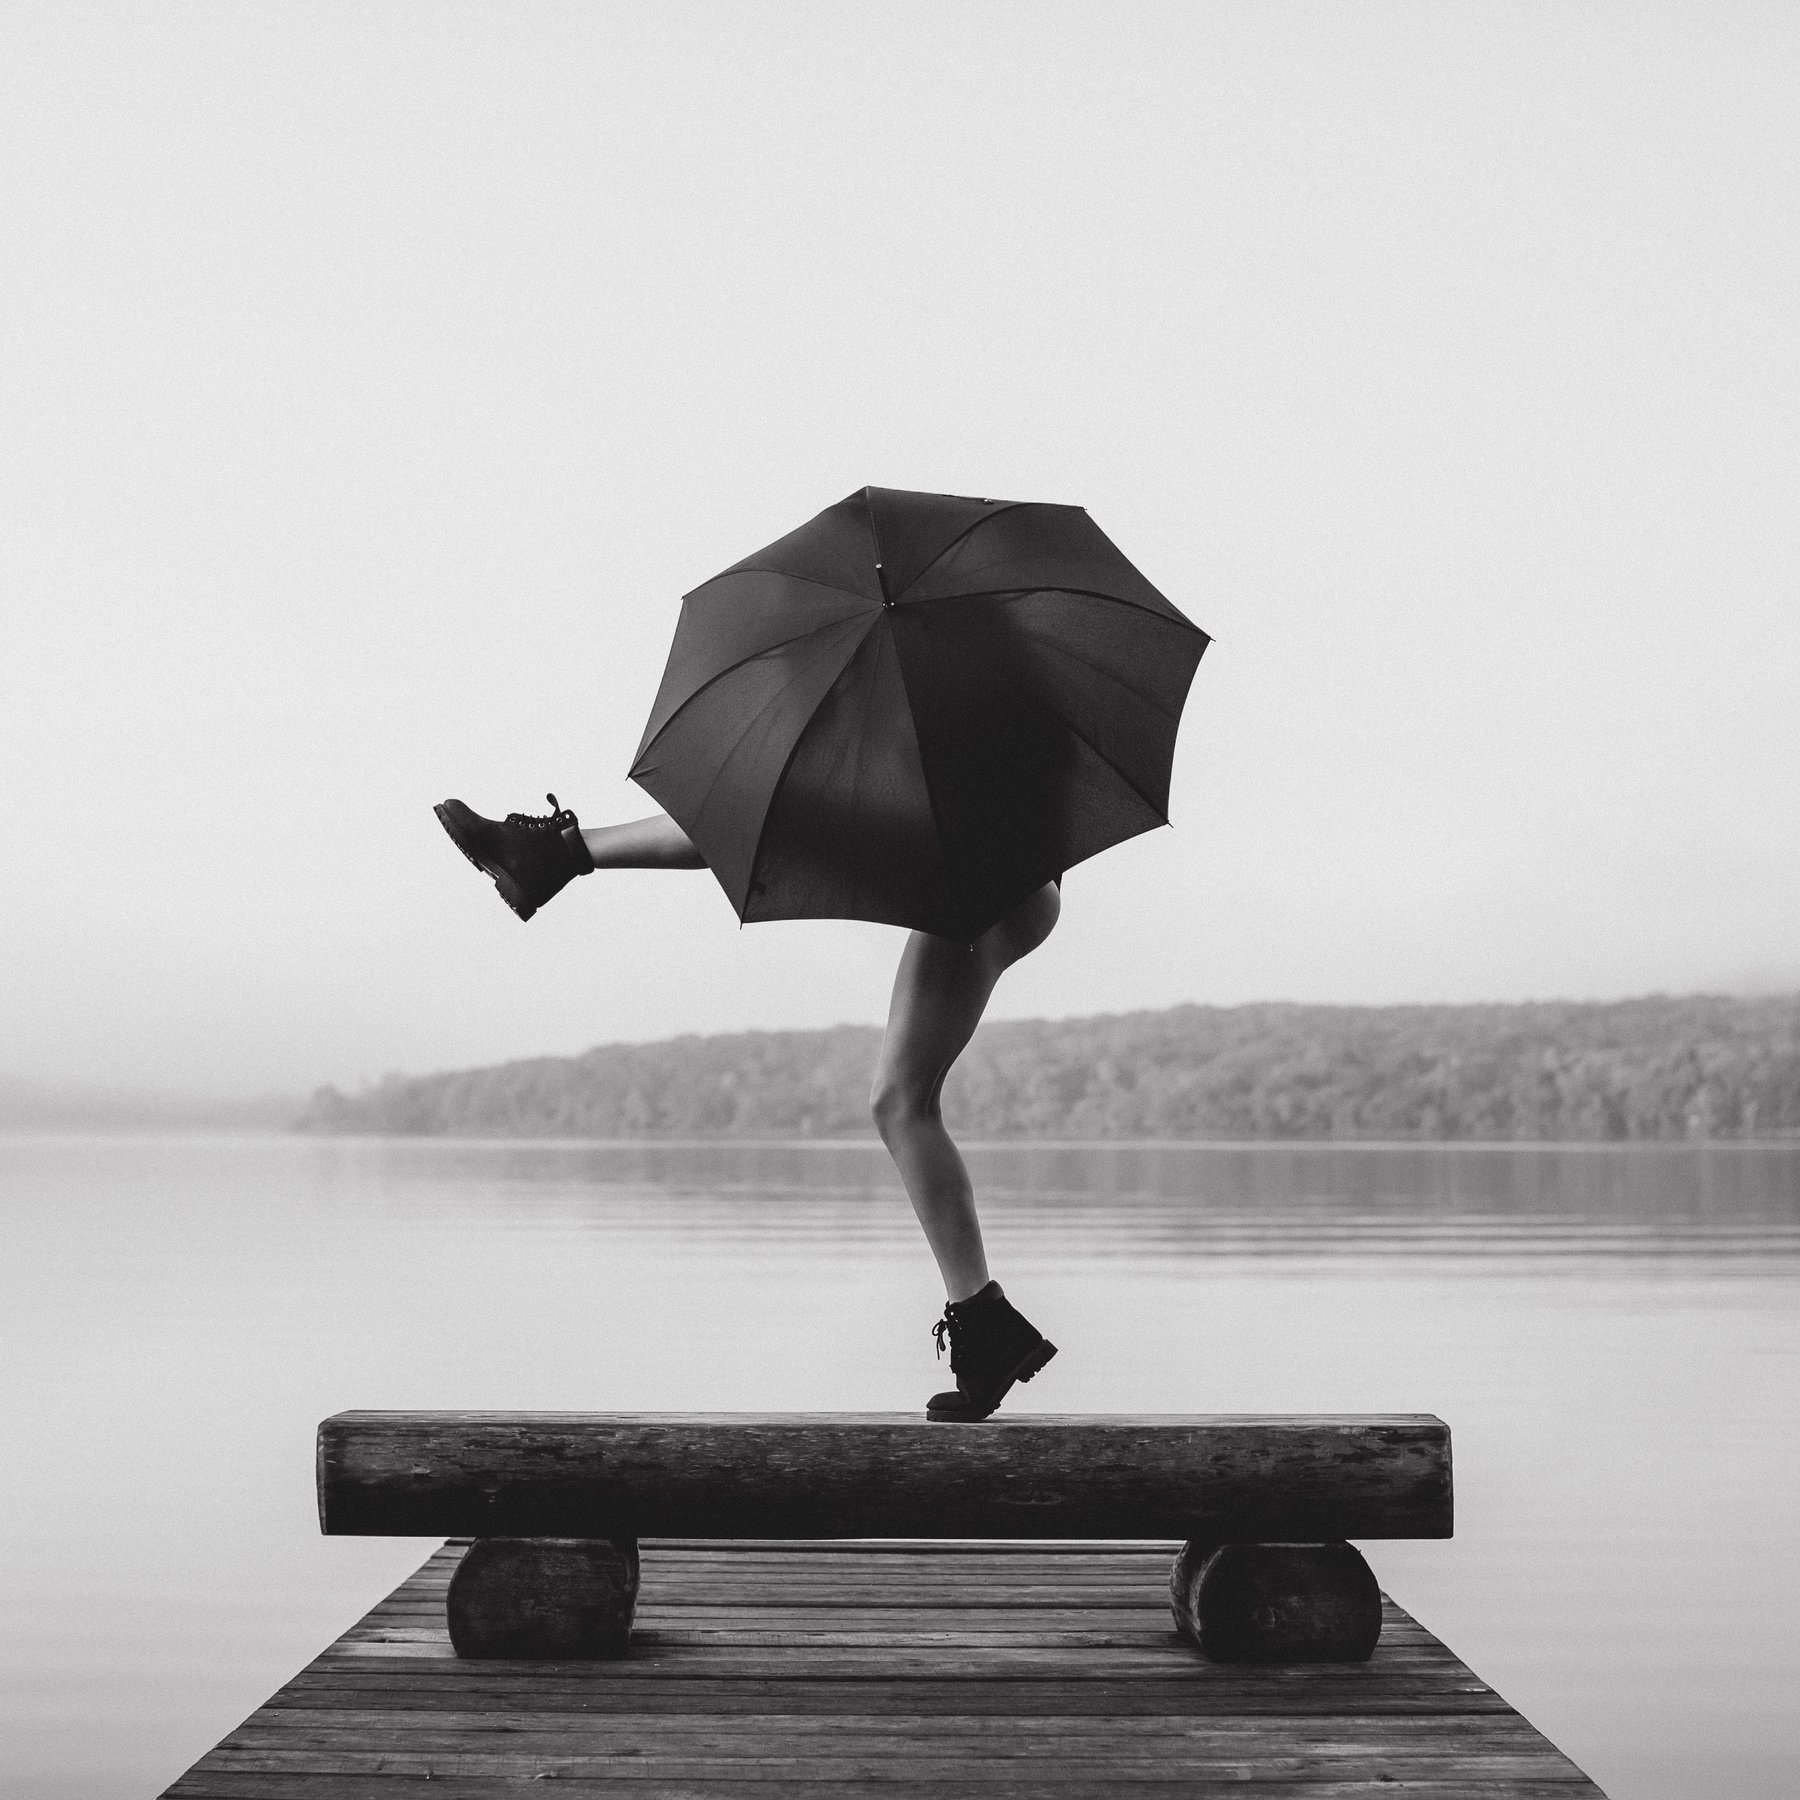 владивосток, приморье, девушка, зонт, непогода, дождь, портрет, чб, черно-белое, Антон Блохин